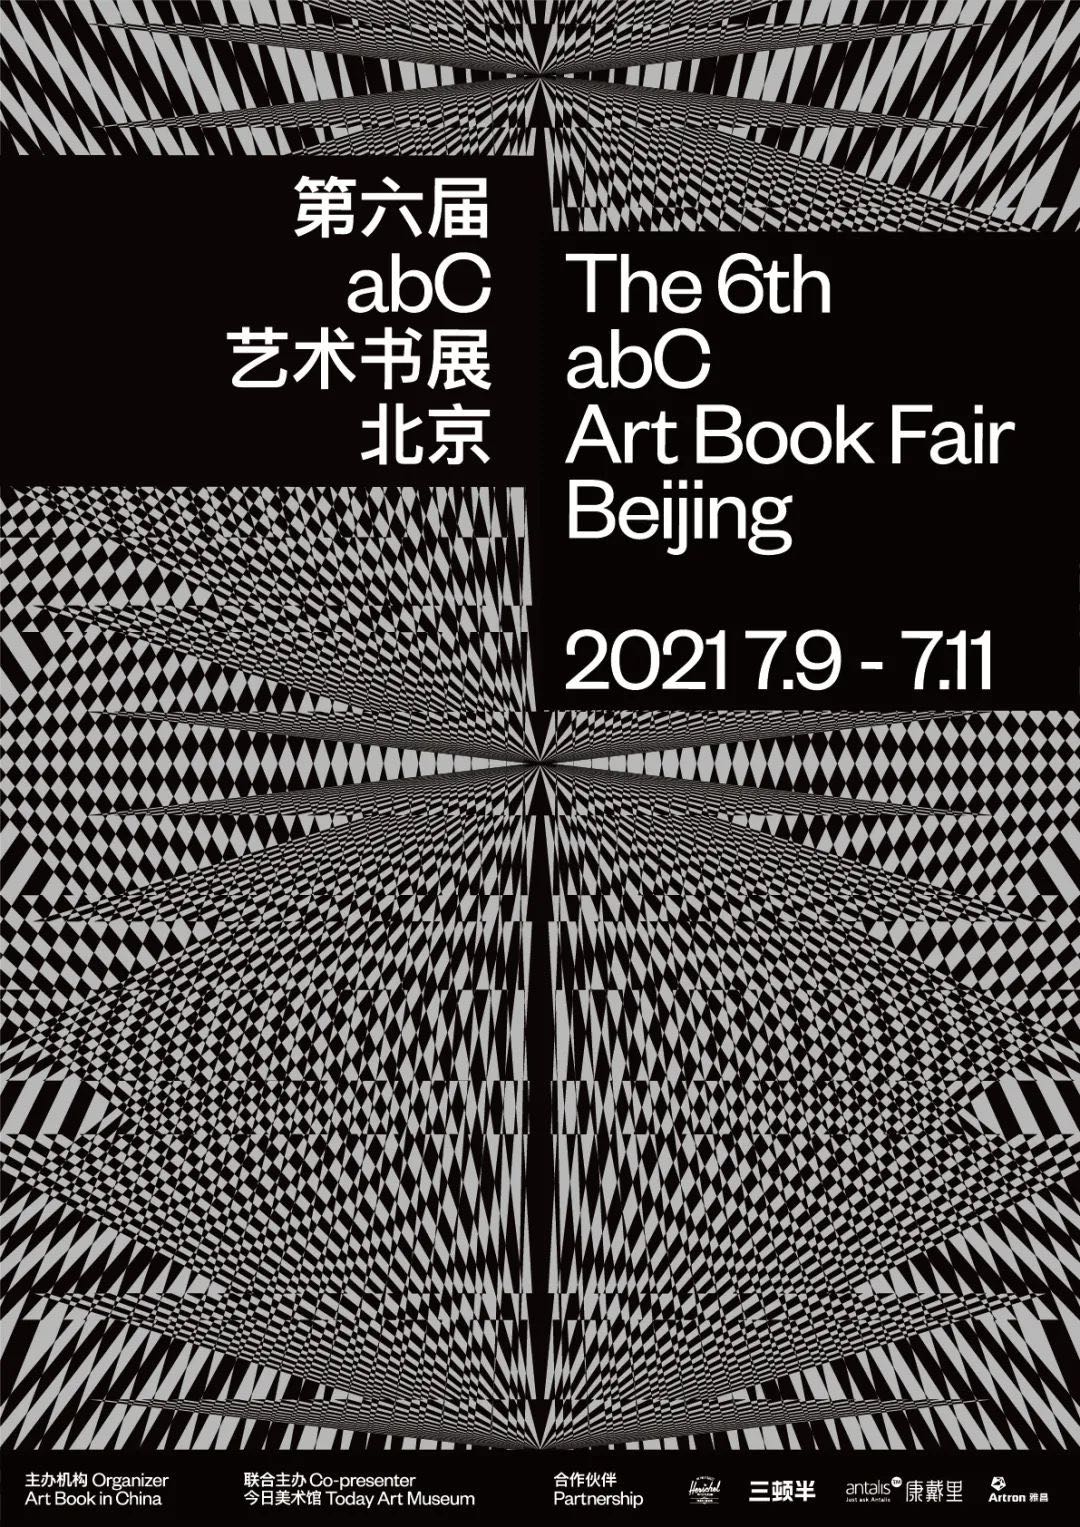 2021 abC 艺术书展北京站即将开催